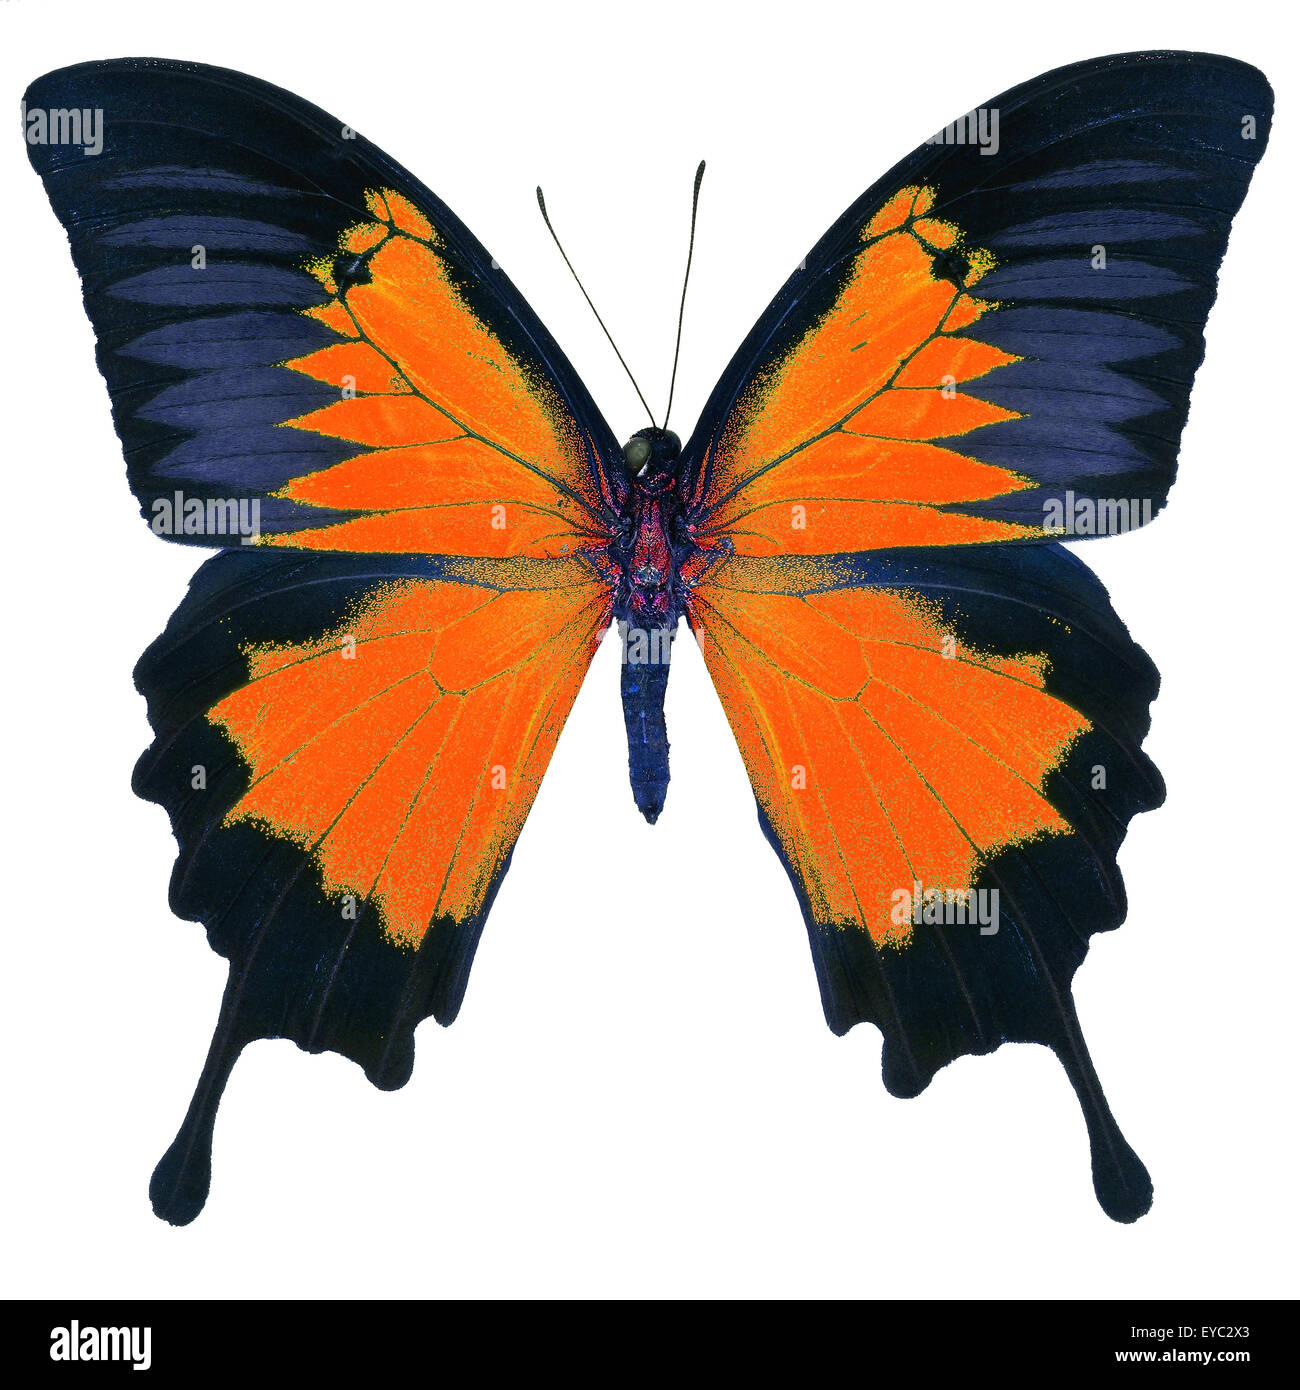 Beau papillon orange, bleu empereur, Mountain bleu (Papilio ulysses) dans fantaisie profil de couleur, isolé sur fond blanc Banque D'Images